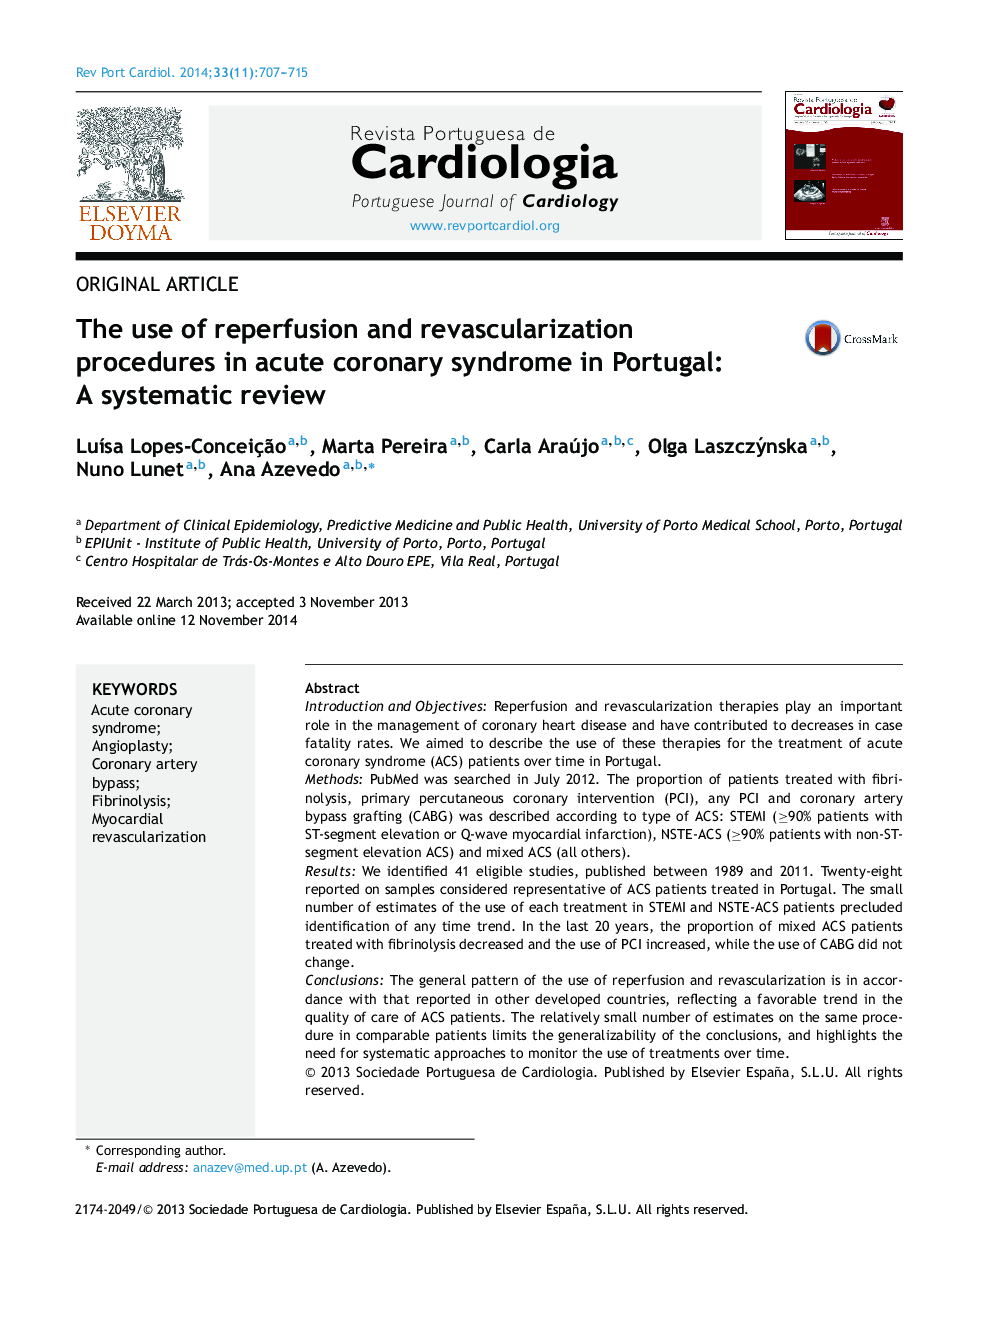 استفاده از روشهای تجویز مجدد و مجدد واکسن در سندرم حاد کرونری در پرتغال: بررسی سیستماتیک 